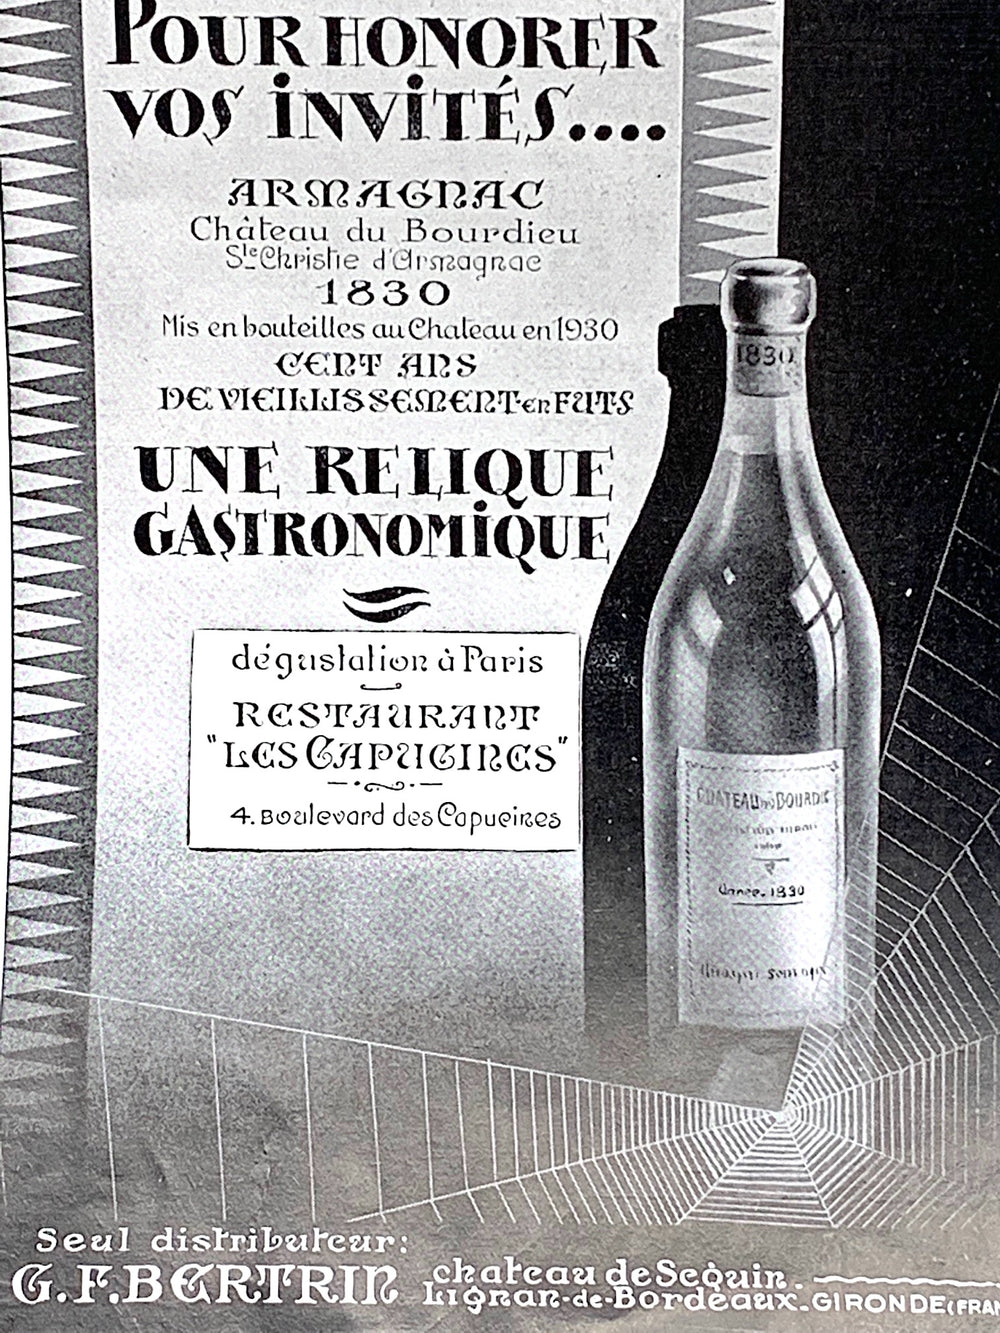 Château du Bourdieu 1830 Sainte-Christie d'Armagnac 100 Year Old 'Cent Ans d'Age' - Old Liquors